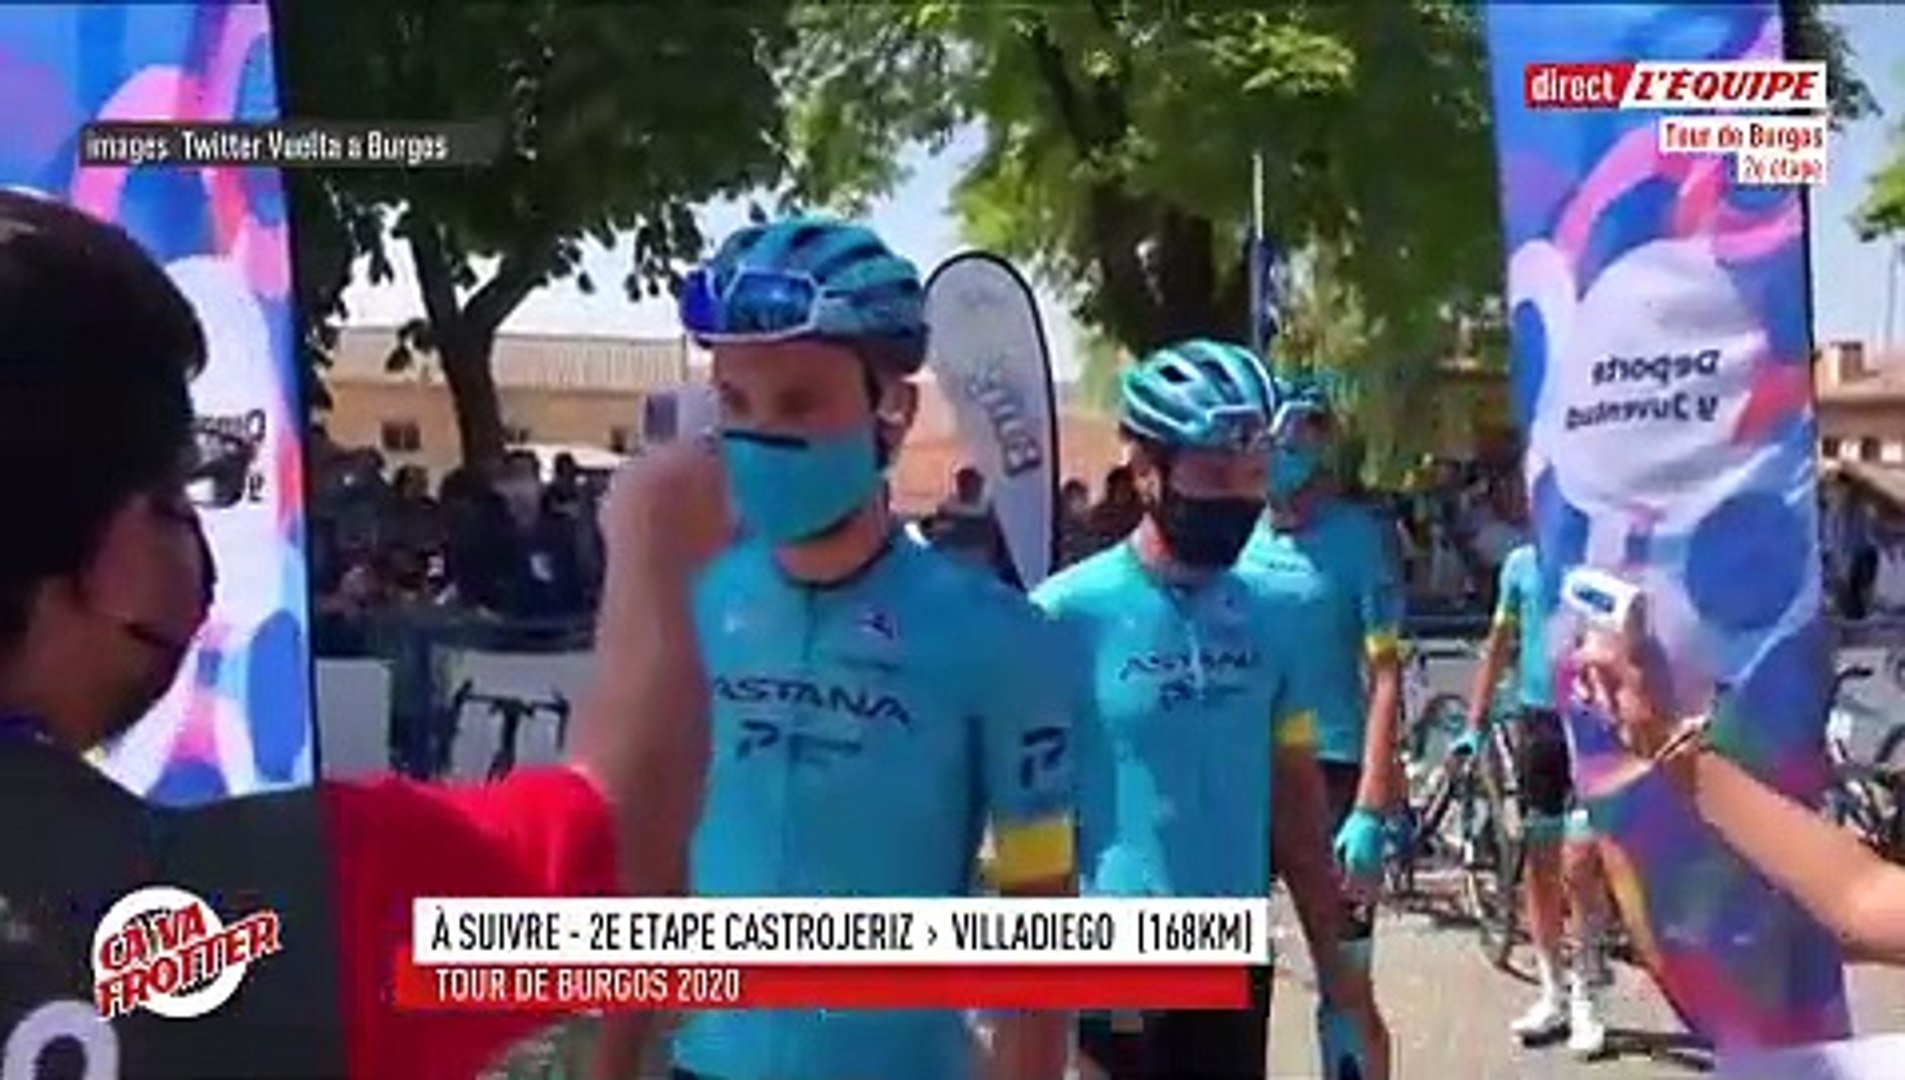 Cyclisme - Replay : √áa va frotter - Emission sp√©ciale avant la 2e √©tape  du Tour de Burgos 2020 - Vidéo Dailymotion